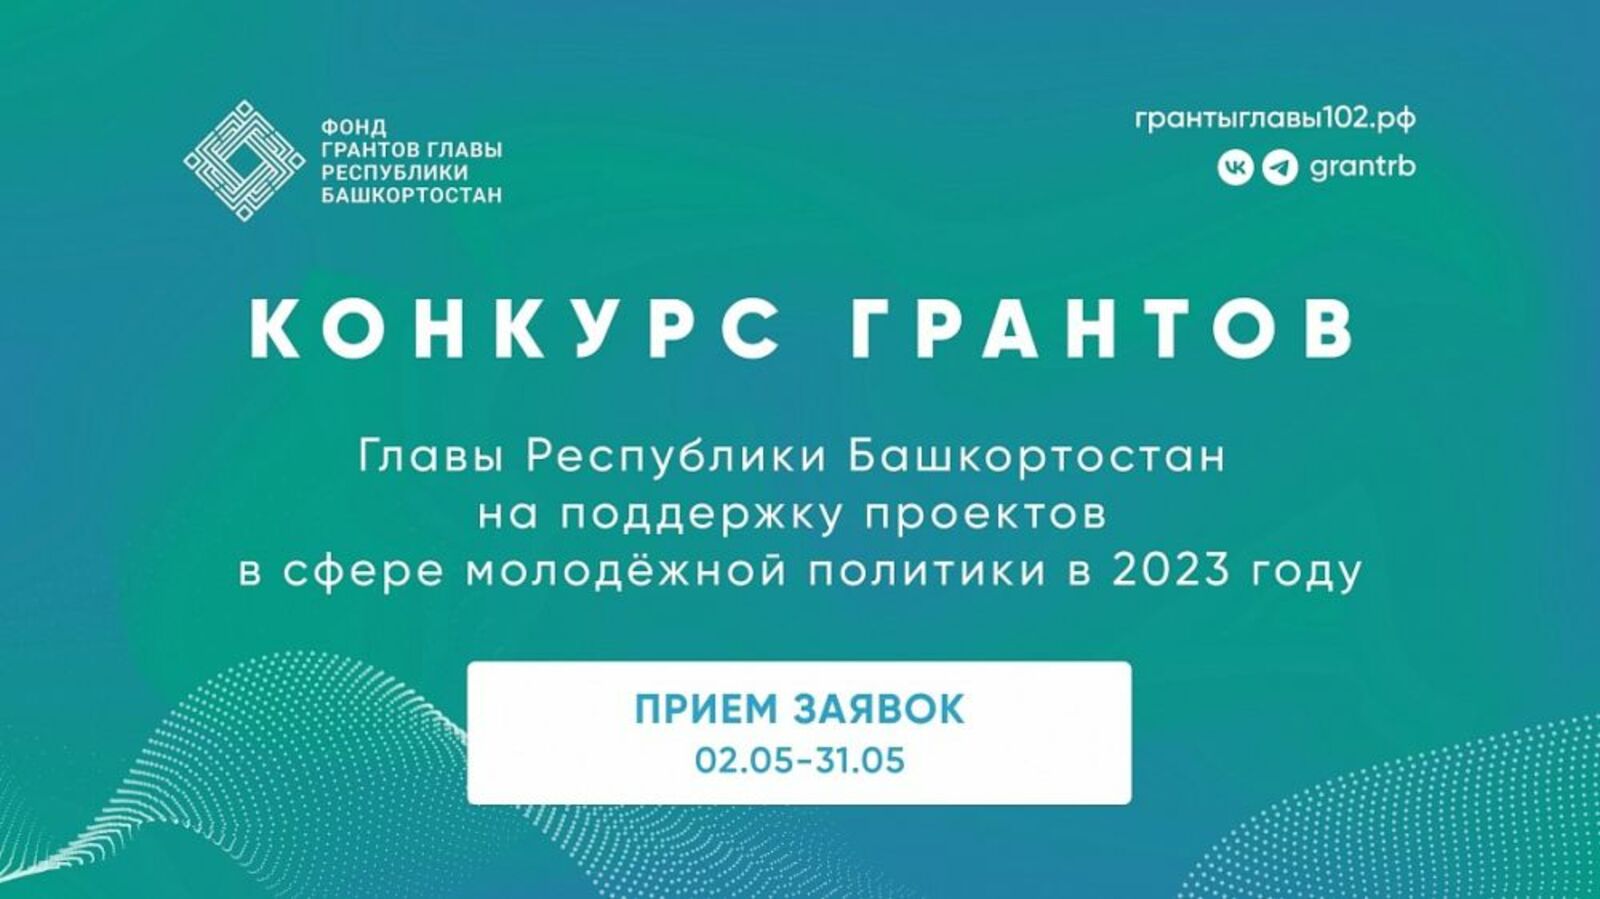 Стартовал конкурс грантов Главы Республики Башкортостан в сфере молодежной политики